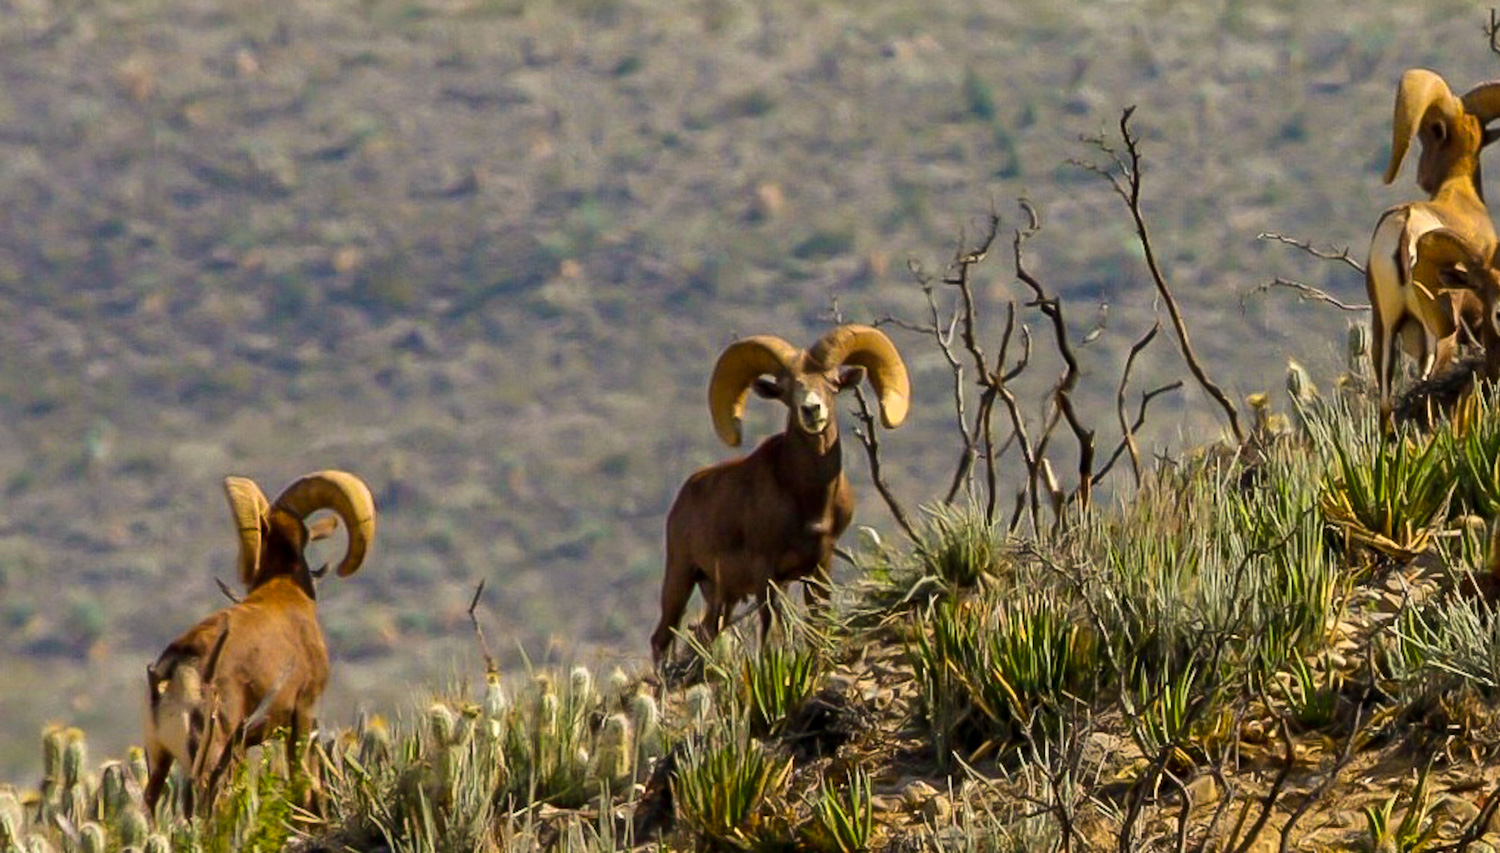 Desert Bighorn sheep rams peer across the arid brush